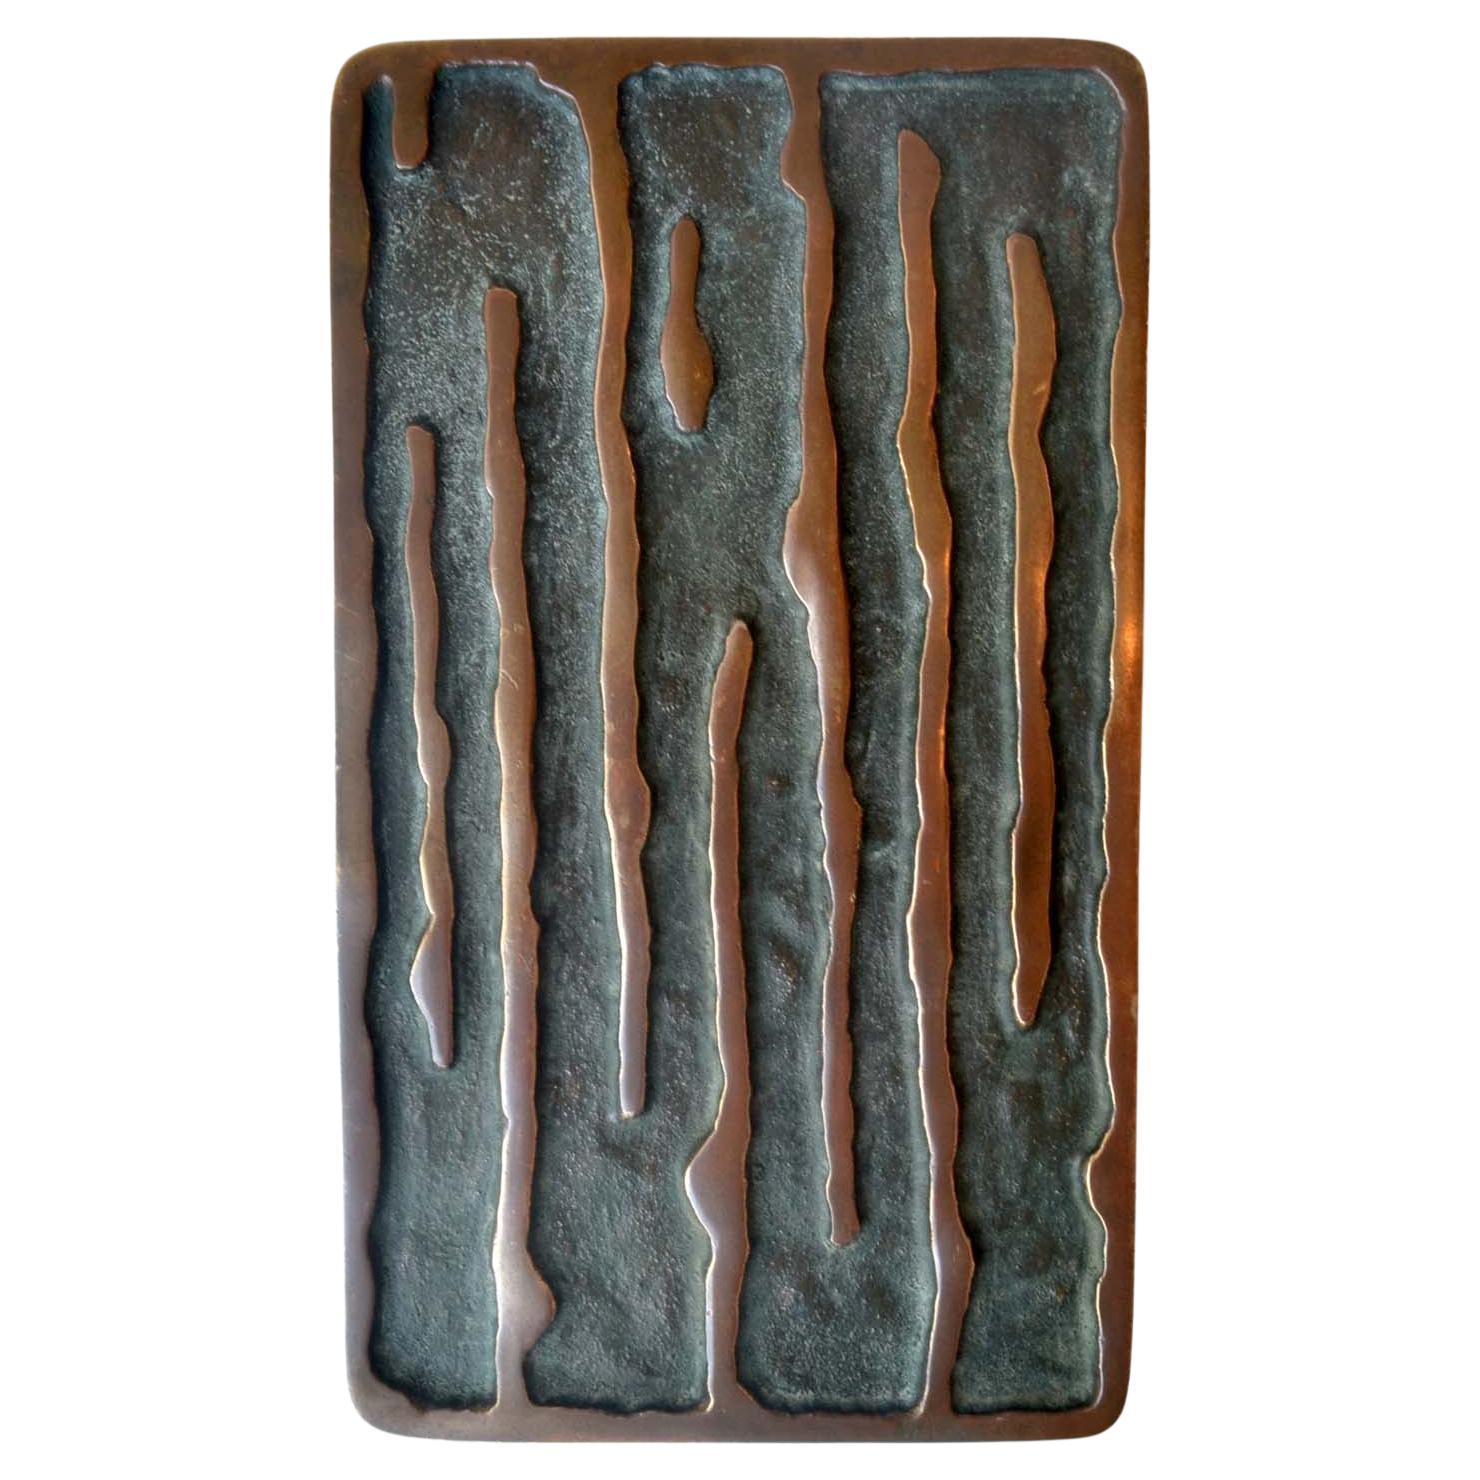 Ensemble de deux poignées de porte rectangulaires en bronze avec relief de vagues verticales, Europe, années 1970. Leur relief et leur patine d'origine donneront une véritable personnalité à une maison. Ces poignées identiques peuvent être